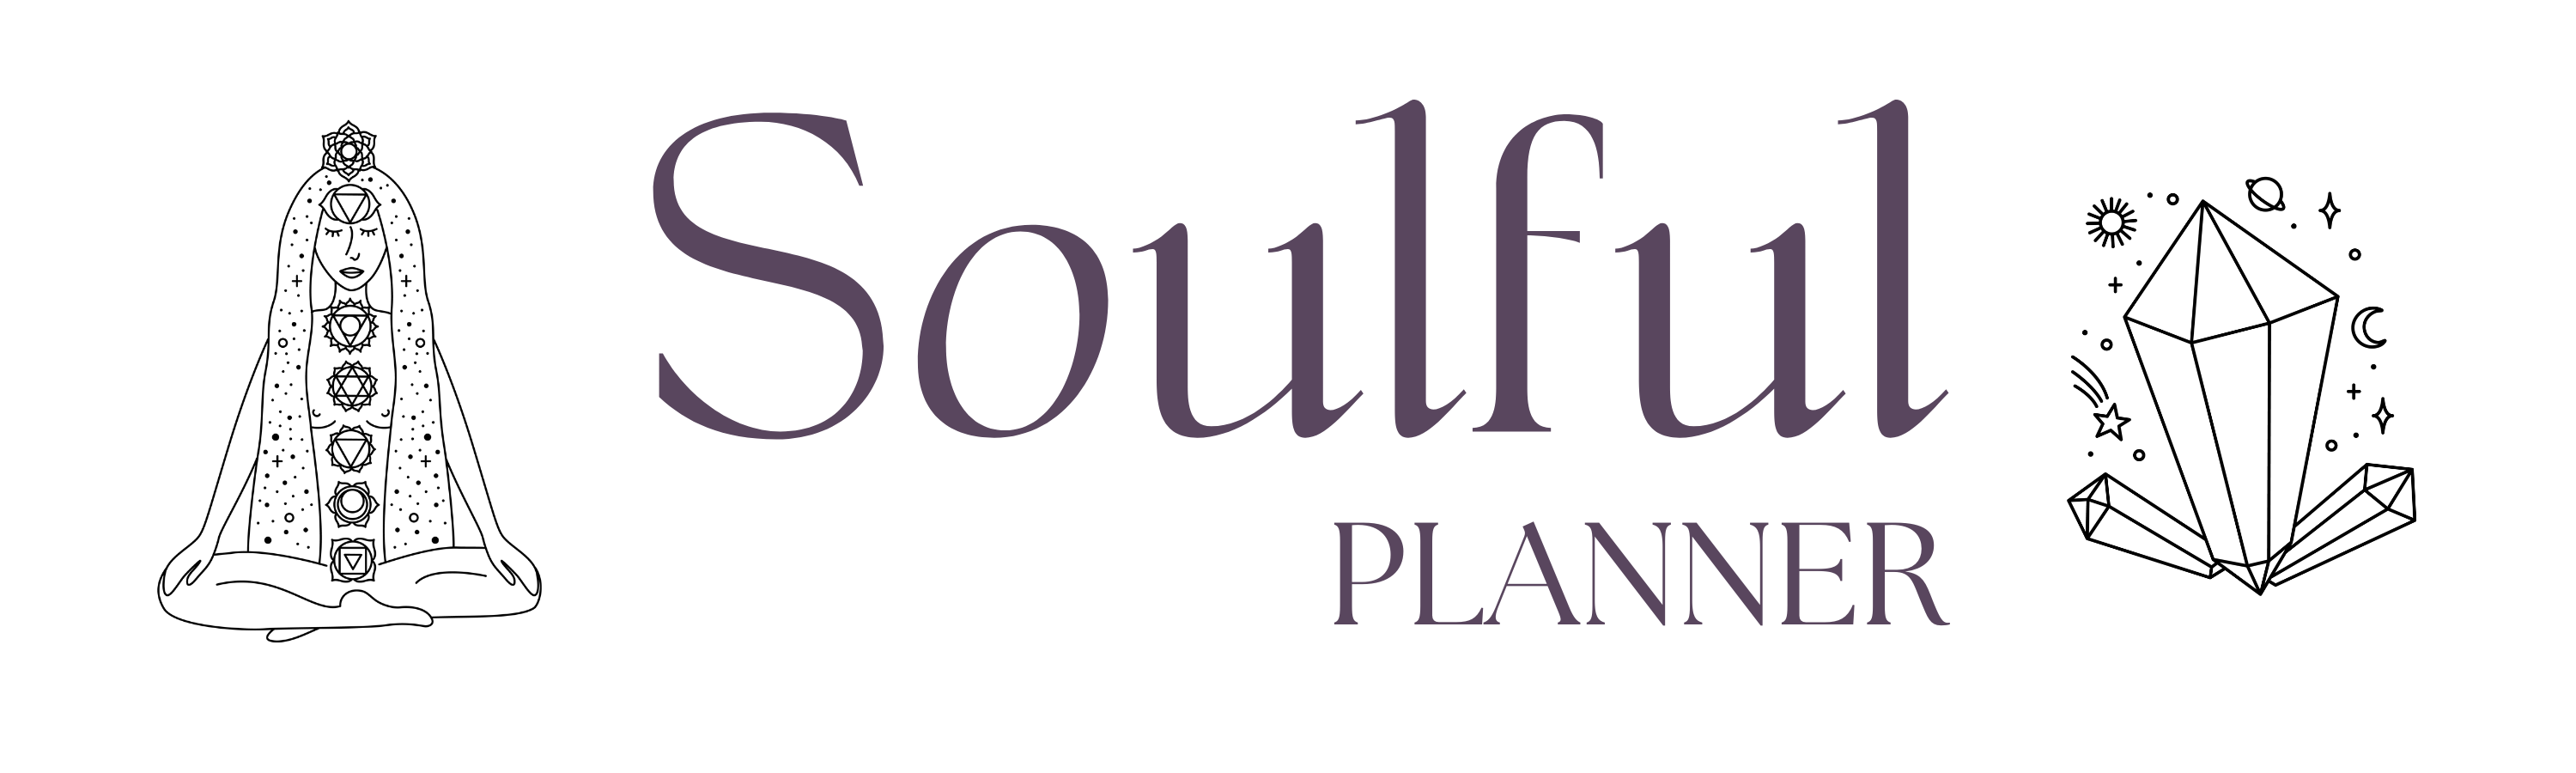 Jilanne Holder - Soulful Planner